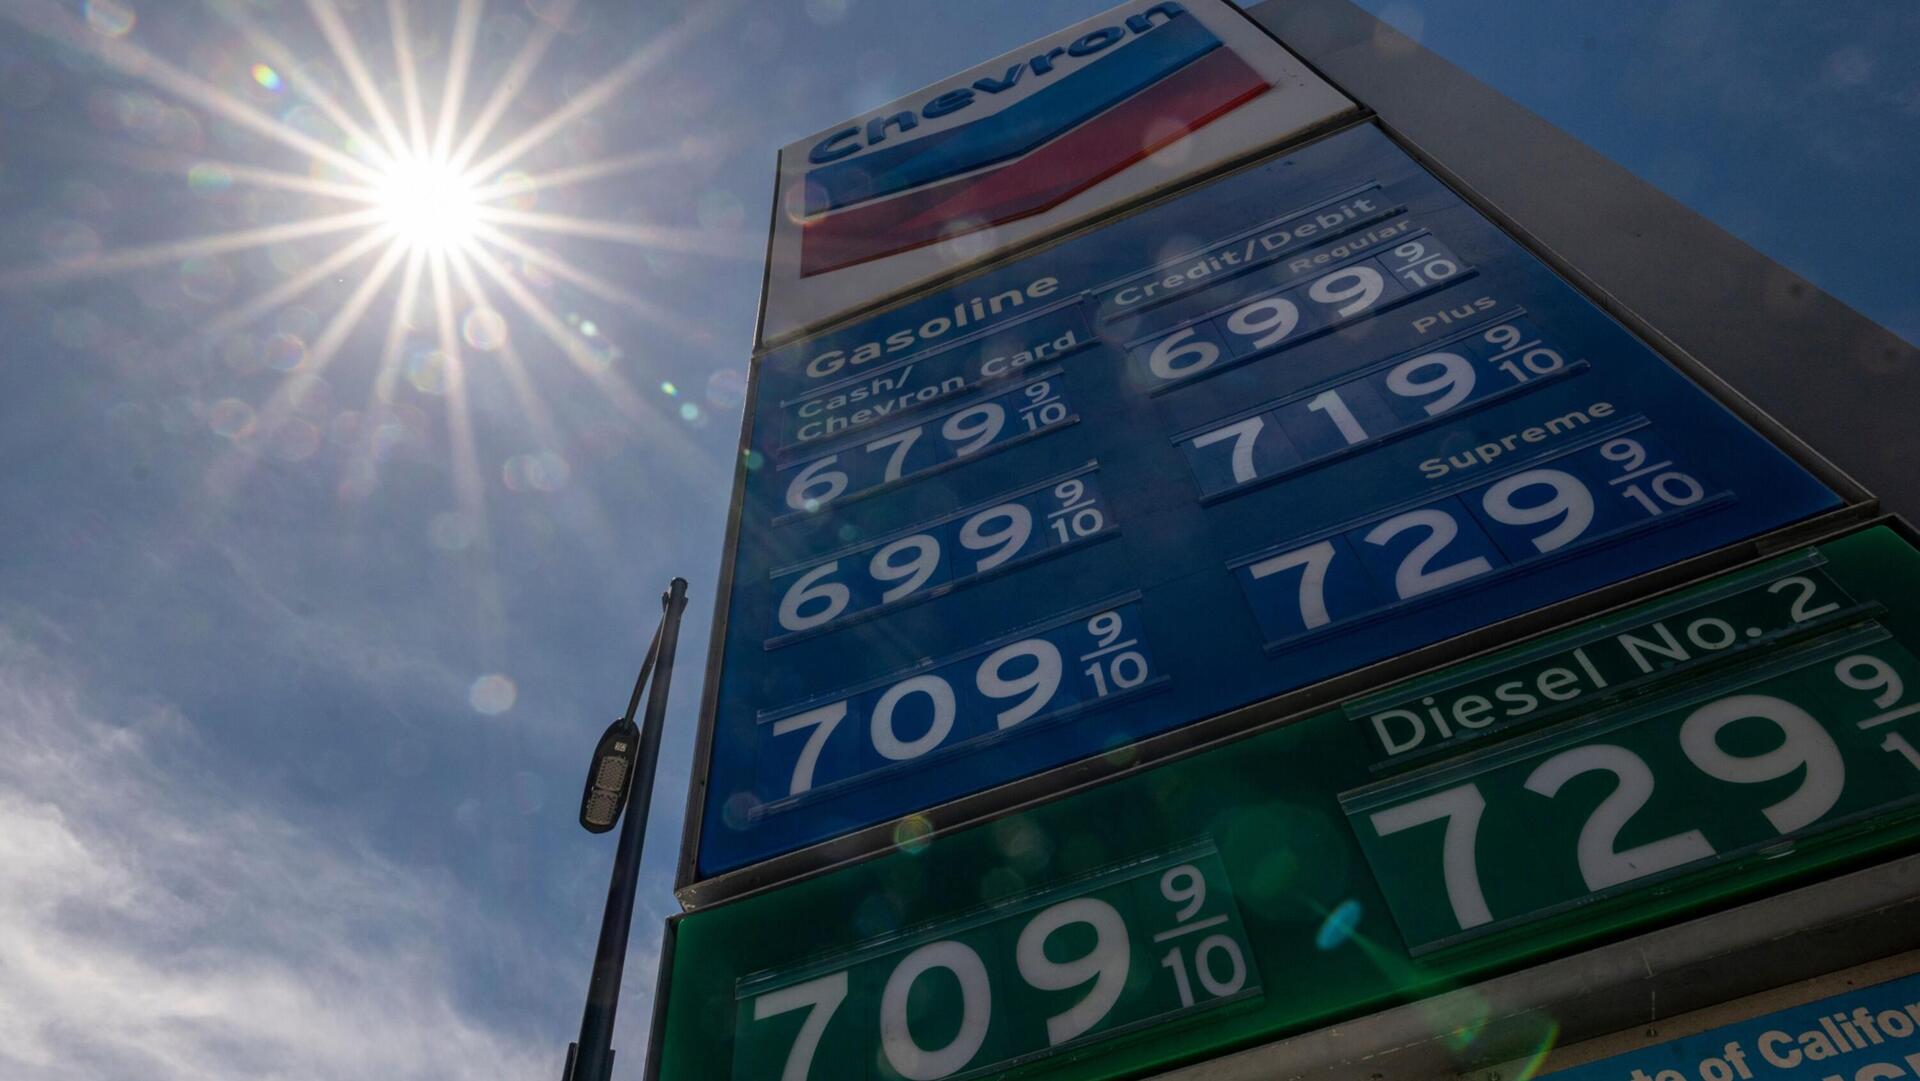 תחנת דלק של שברון בסן פרנסיסקו ארה"ב, המחירים מזנקים